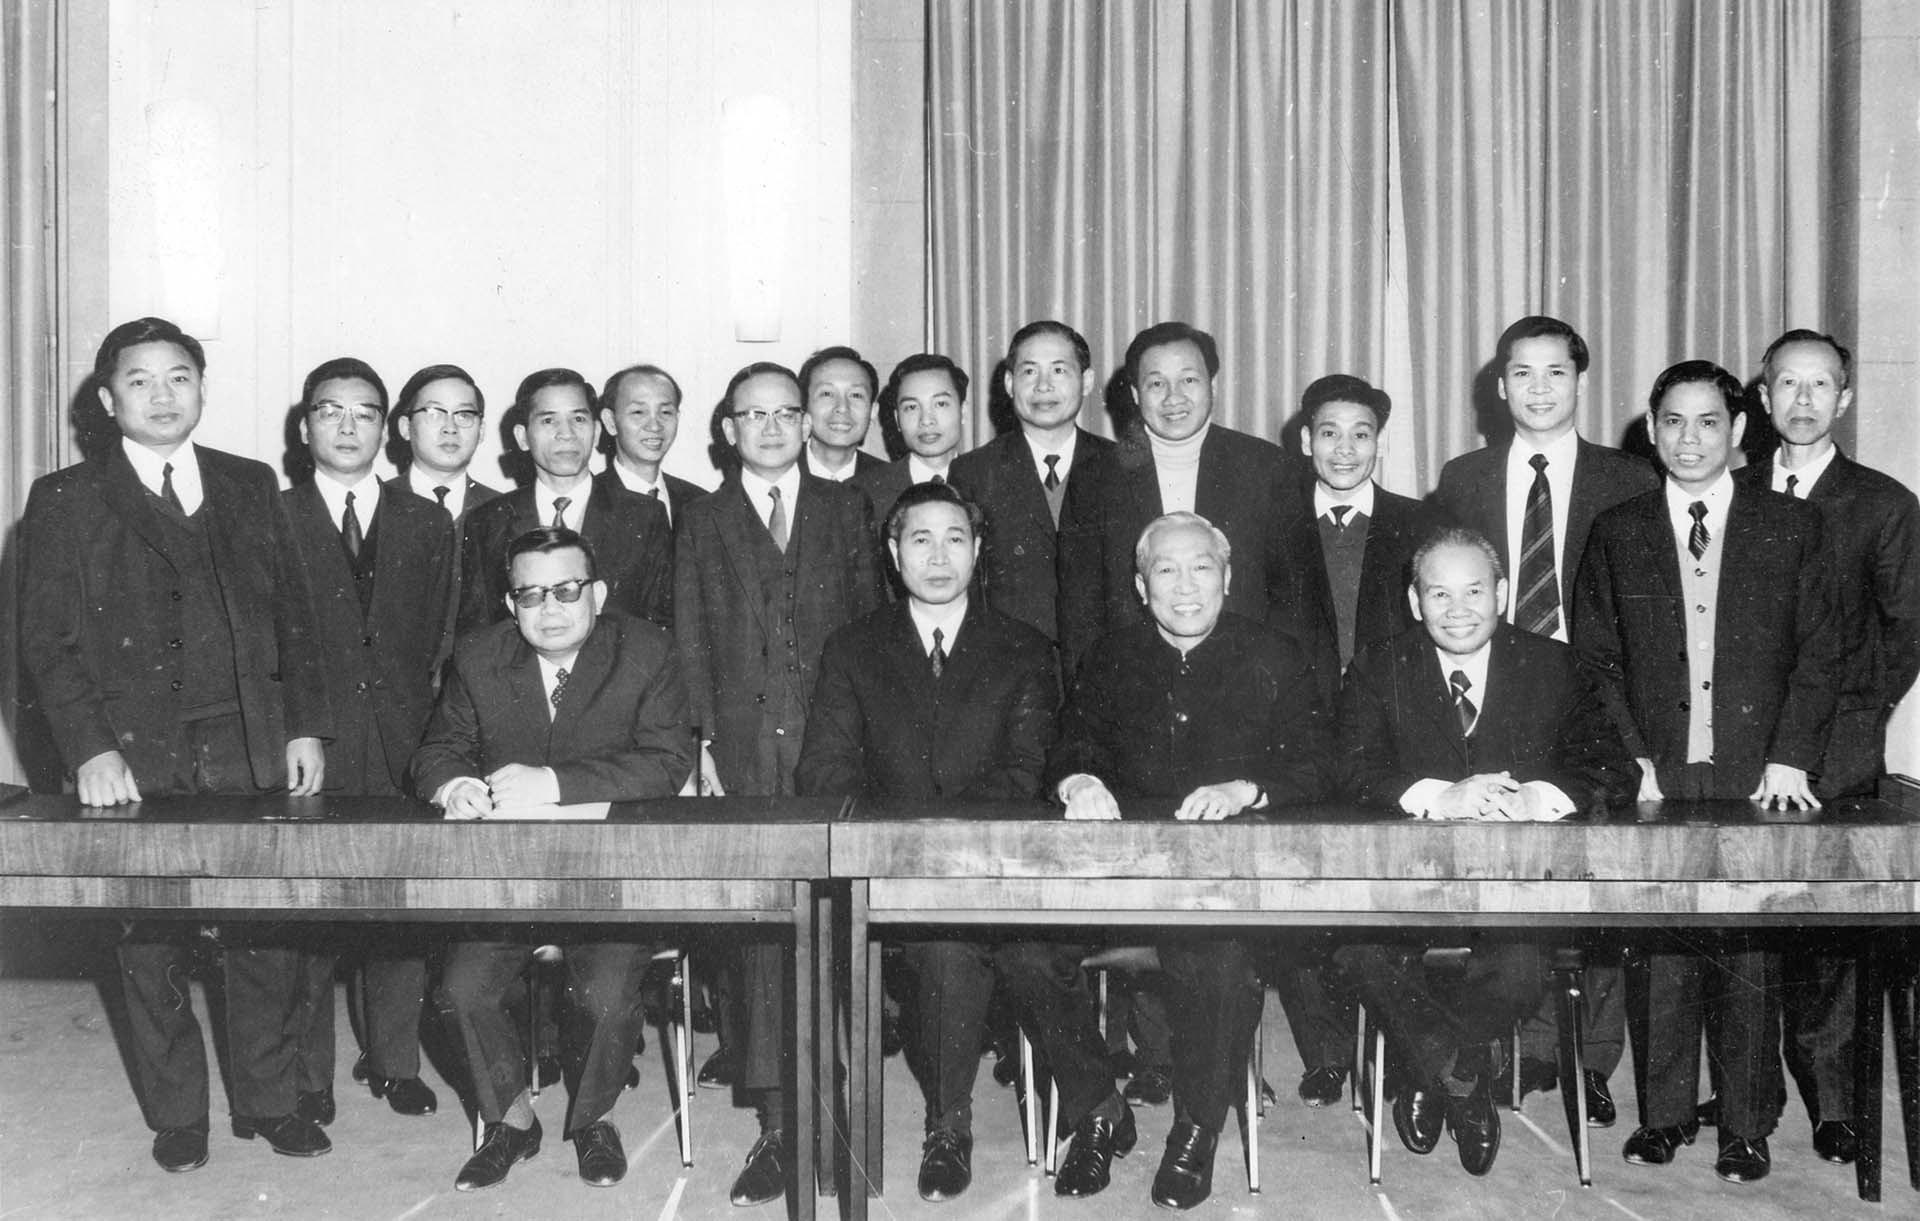 Cố vấn đặc biệt Lê Đức Thọ và các thành viên trong đoàn Việt Nam Dân chủ Cộng hòa sau khi ký tắt Hiệp định Paris, ngày 23/01/1973.